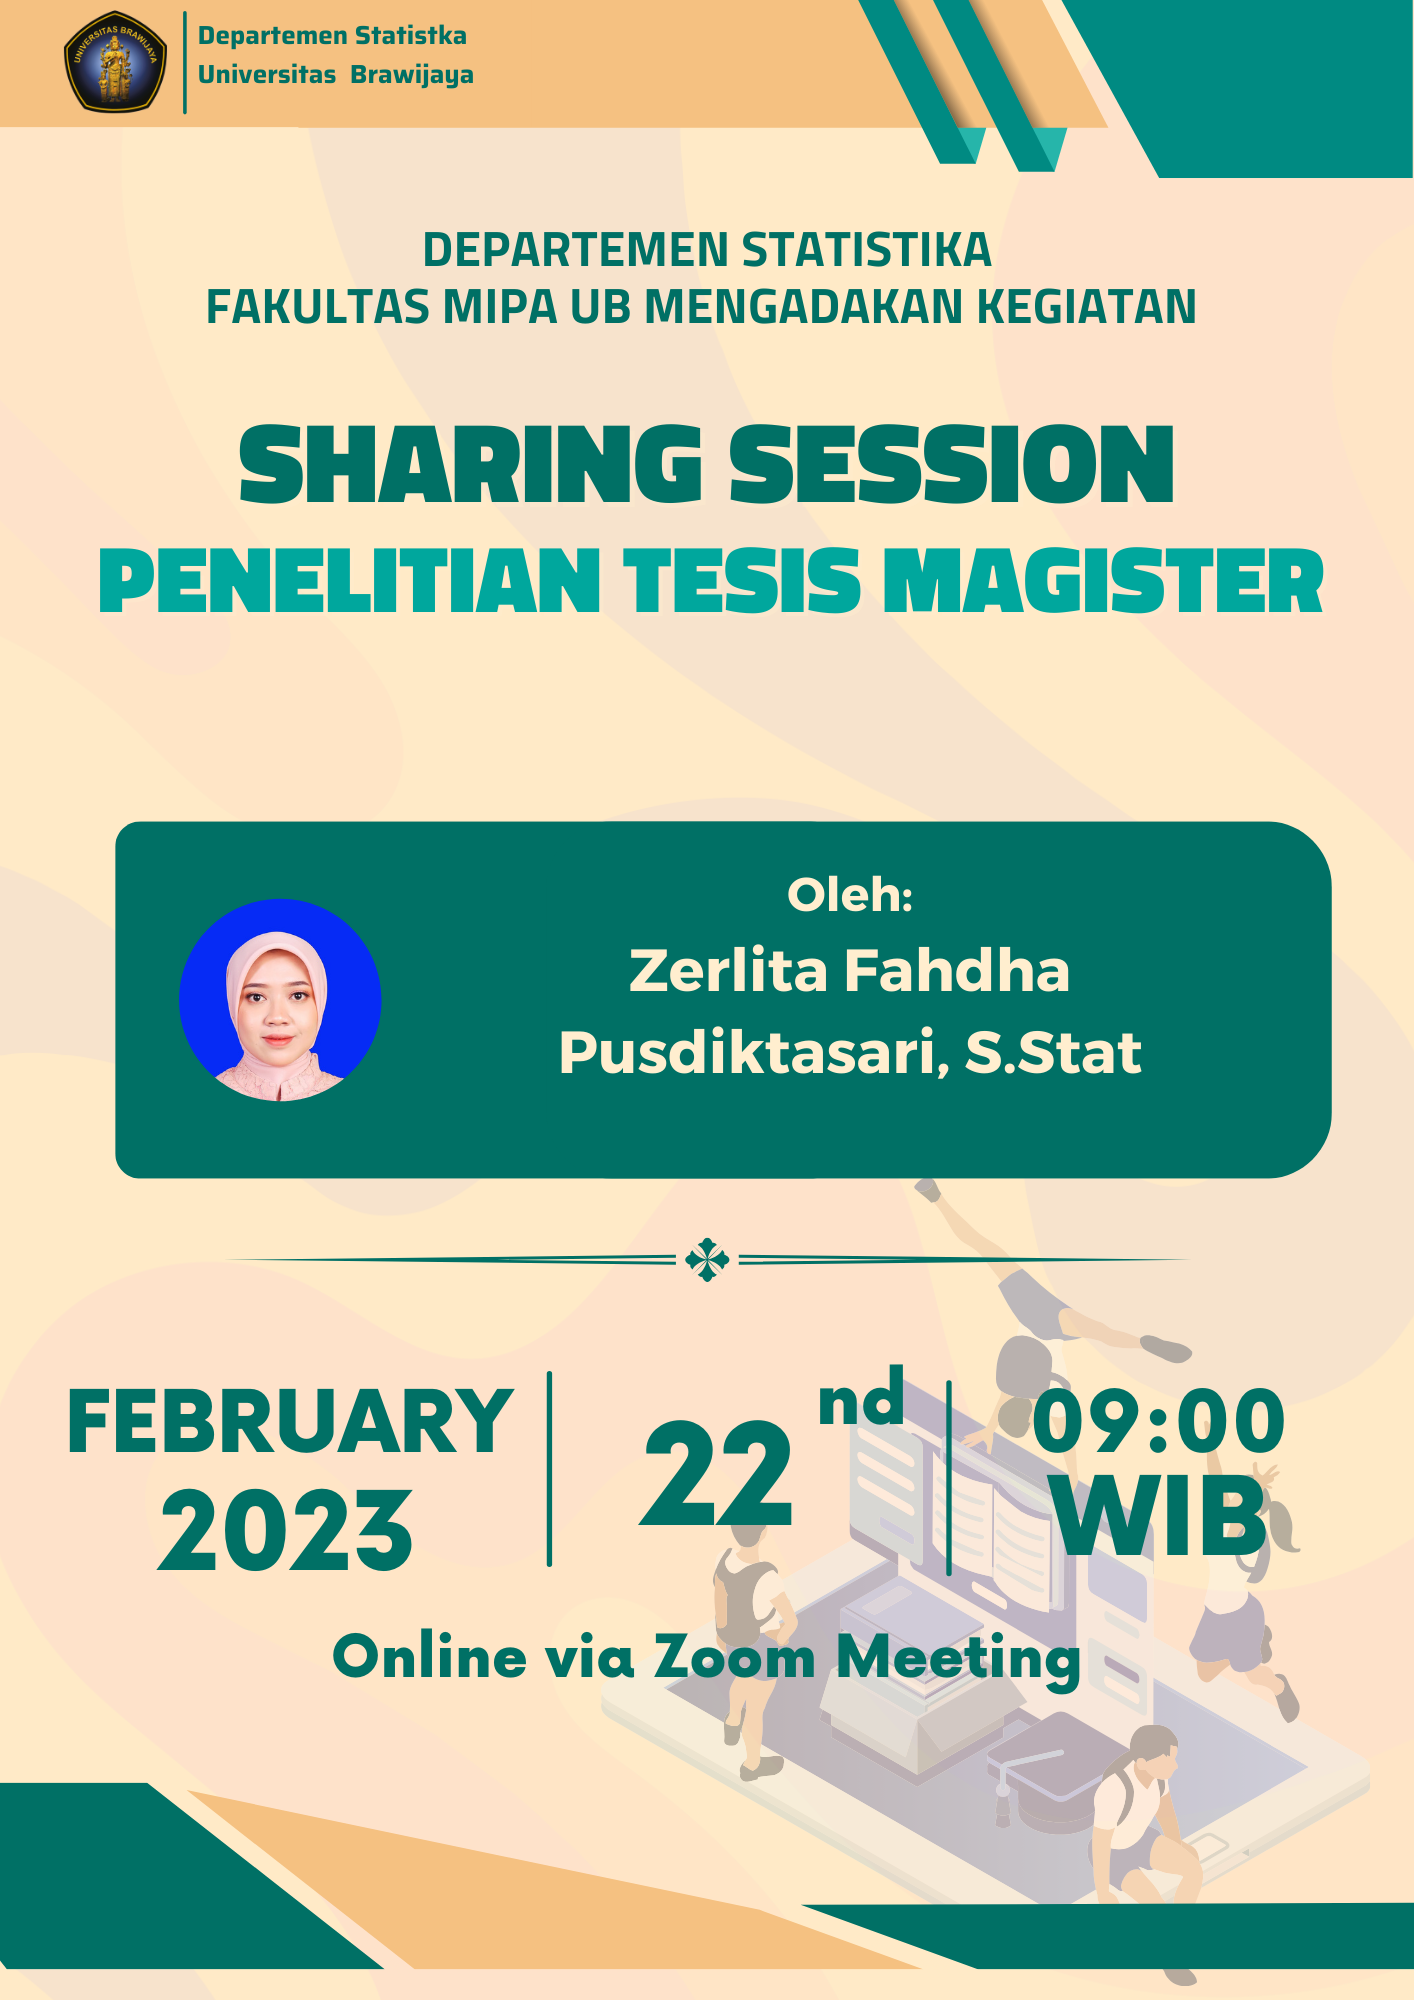 Sharing Session Penelitian Tesis Magister (PTM) oleh Zerlita Fahdha Pusdiktasari, S.Stat.